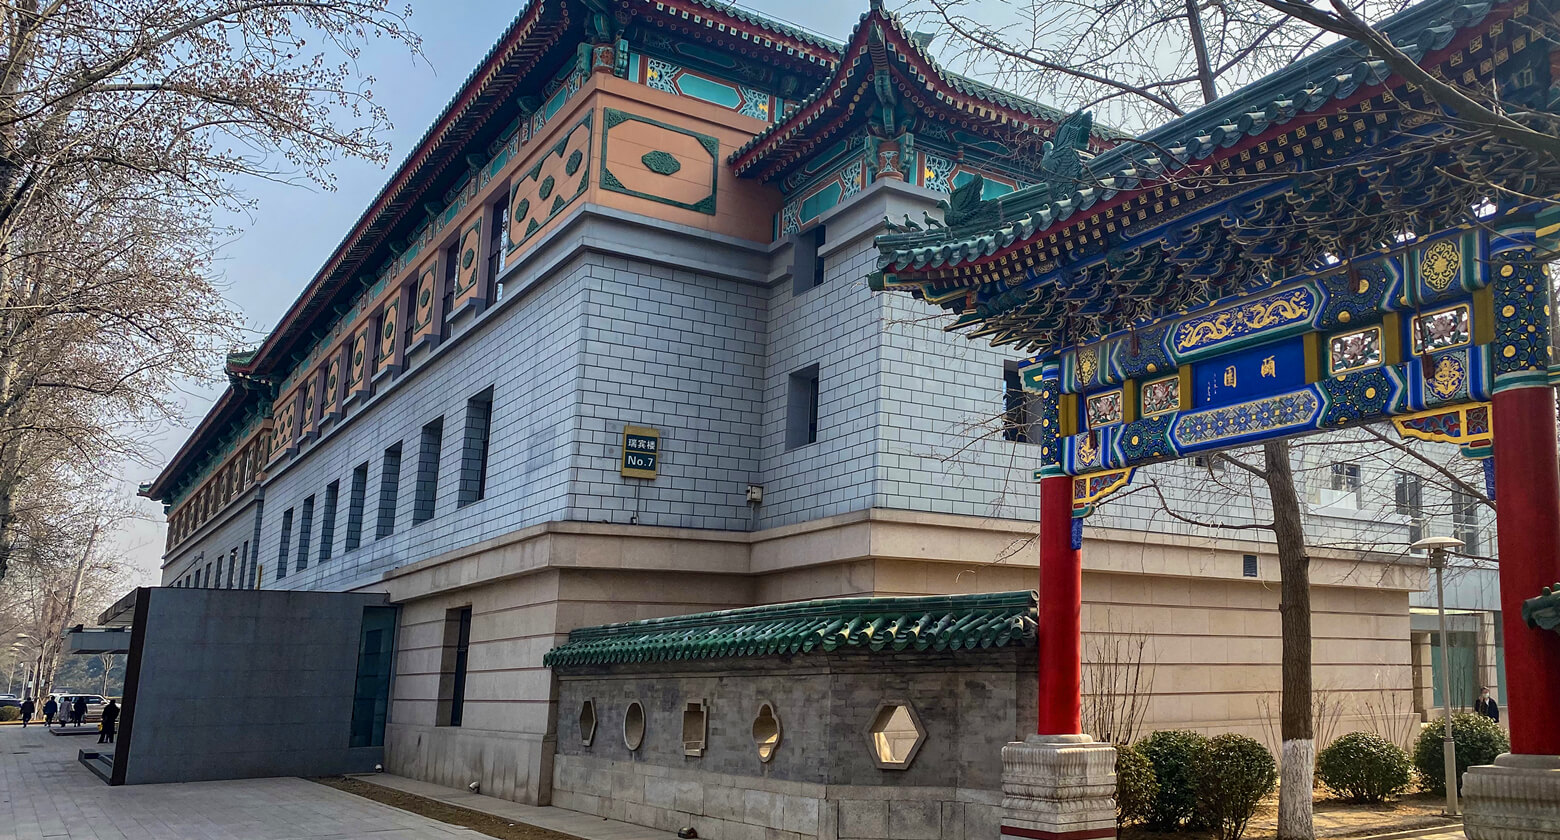 北京北京友谊宾馆贵宾楼 (Beijing Friendship Hotel Grand Building) - Agoda 网上最低价格保证，即时订房服务